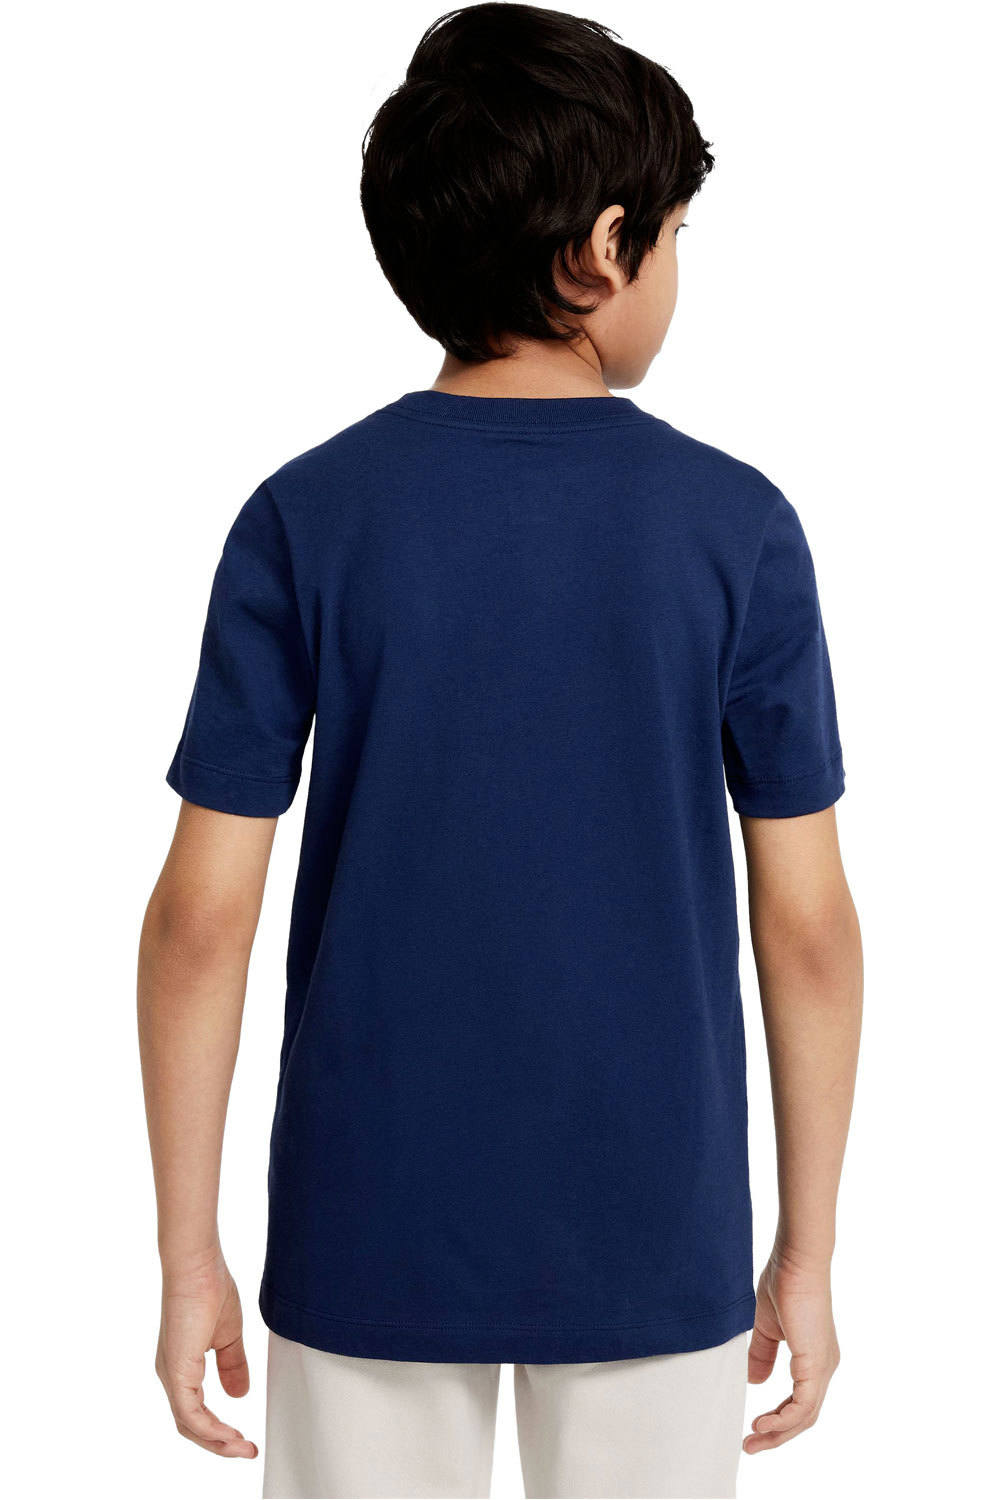 Nike camiseta manga corta niño B NSW FUTURA PANEL TEE vista trasera